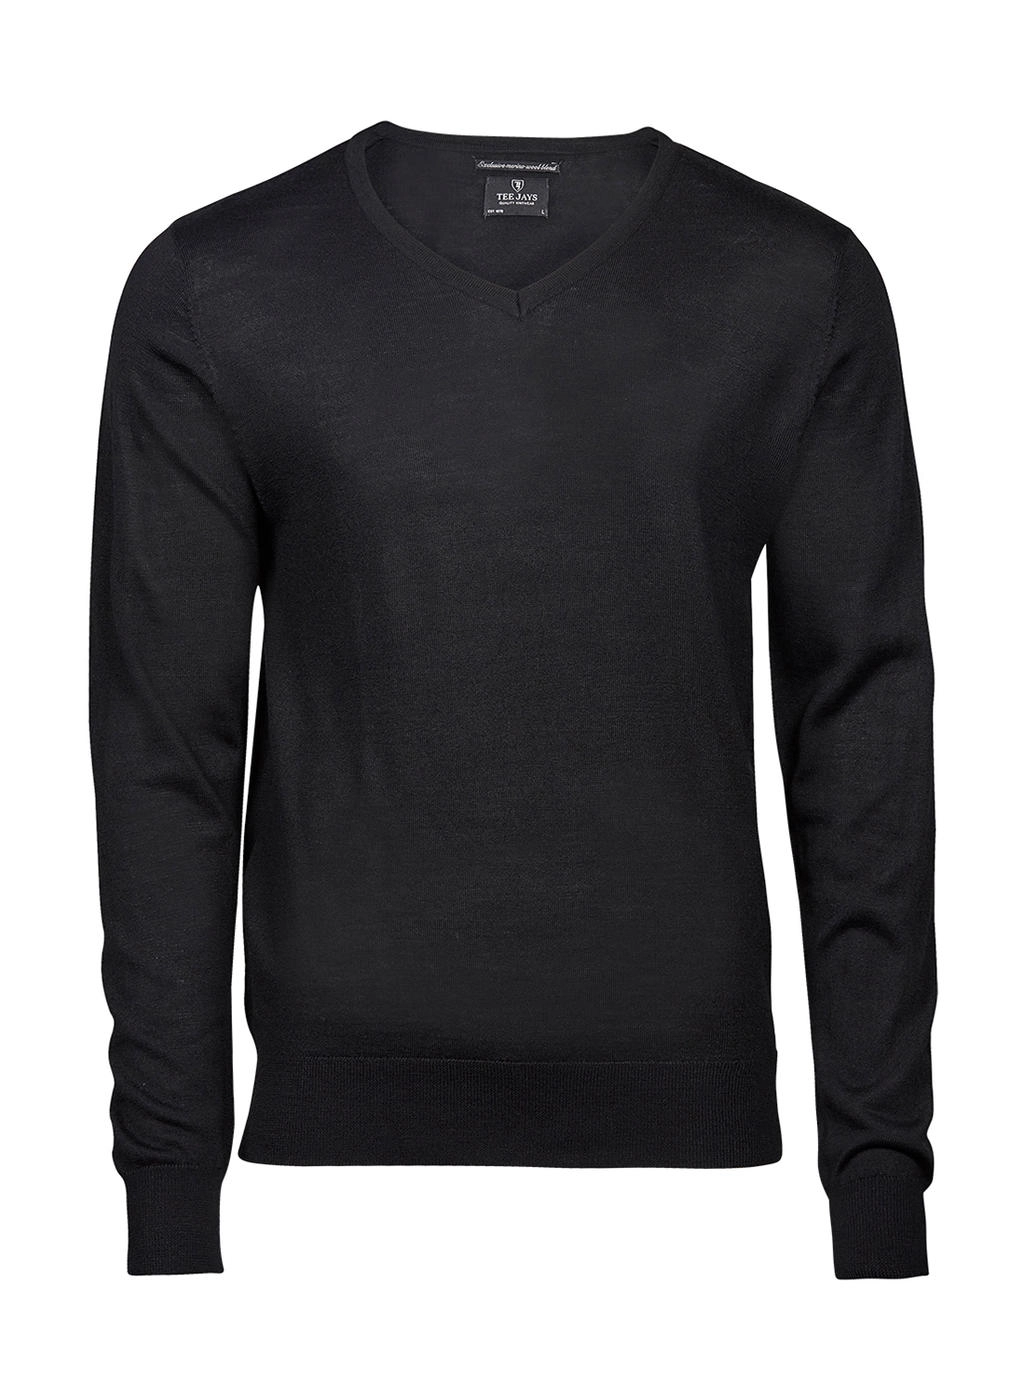 Men`s V-Neck Sweater zum Besticken und Bedrucken in der Farbe Black mit Ihren Logo, Schriftzug oder Motiv.